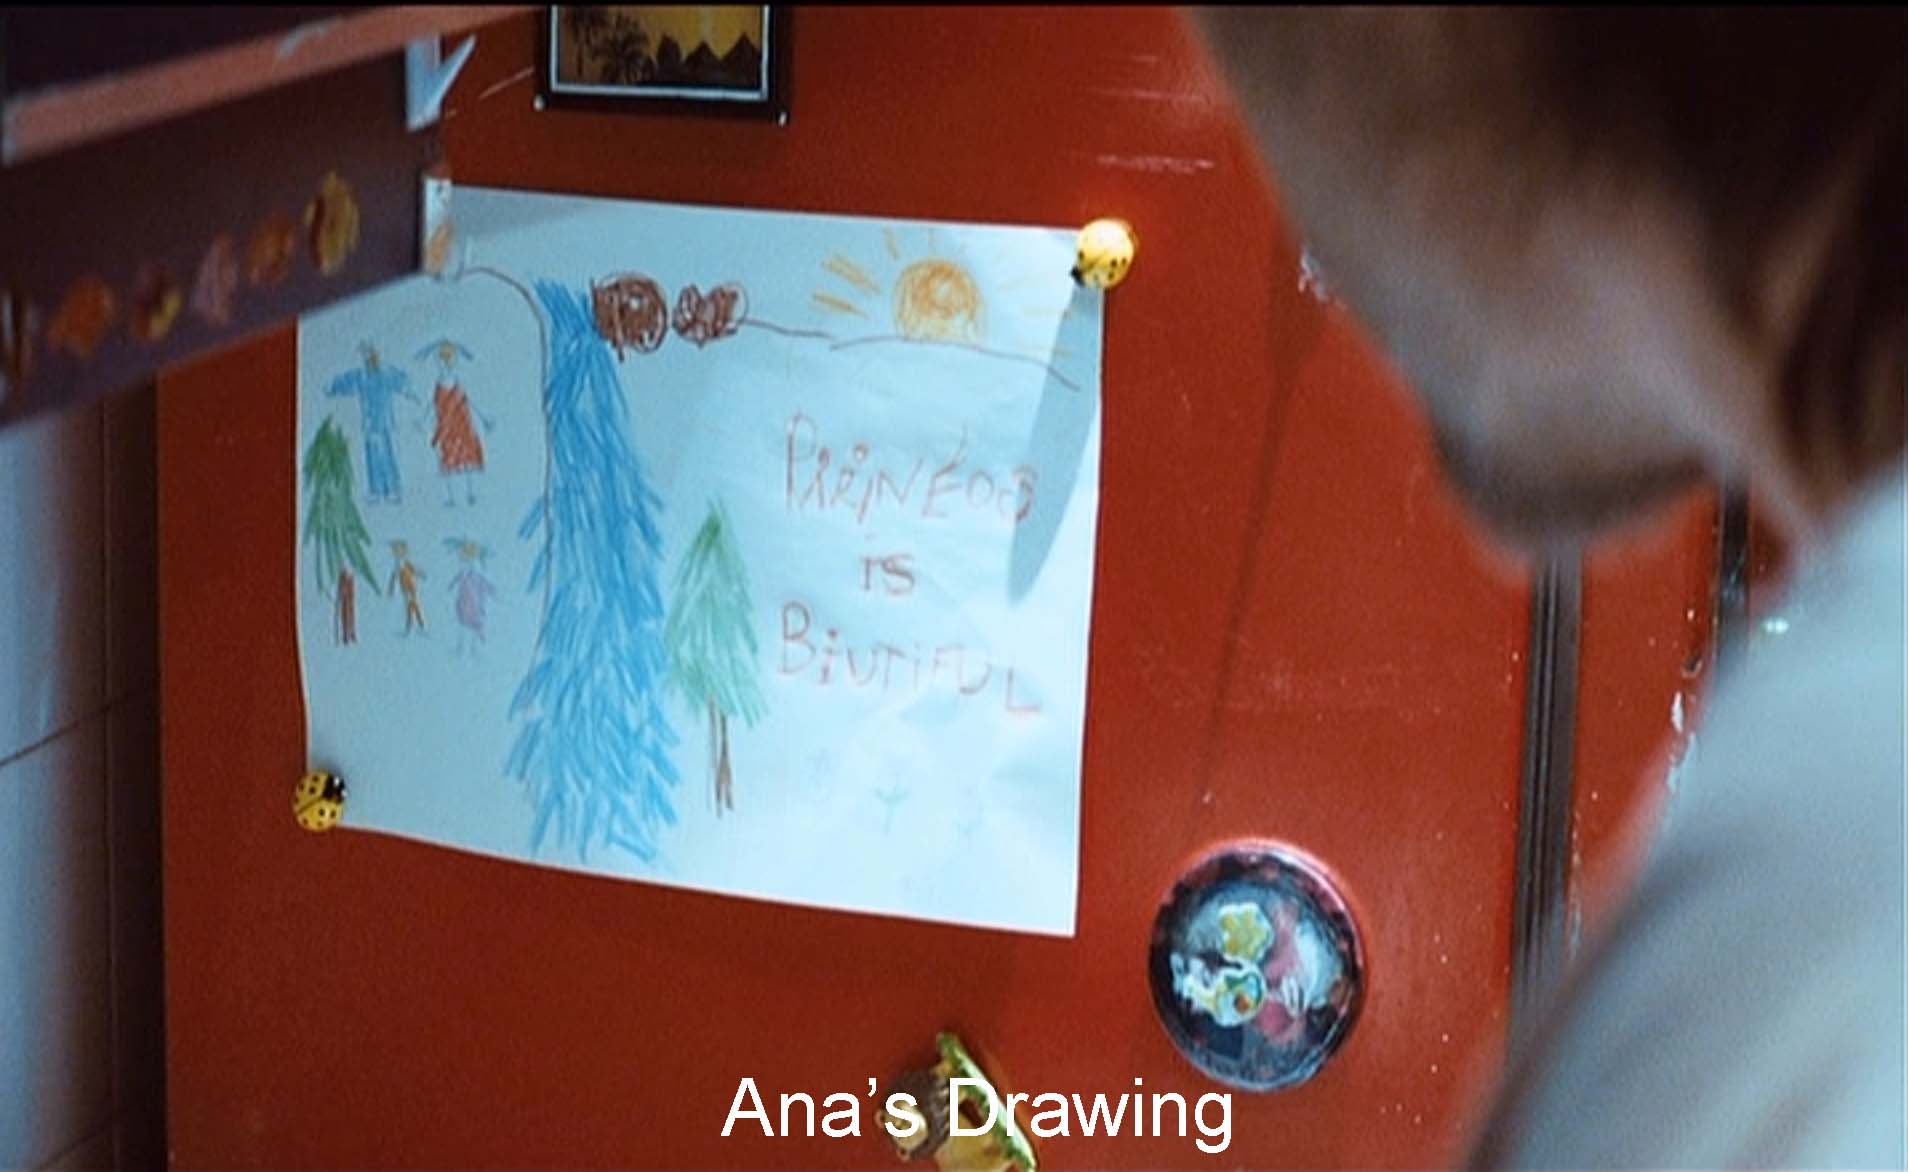 Ana's drawing